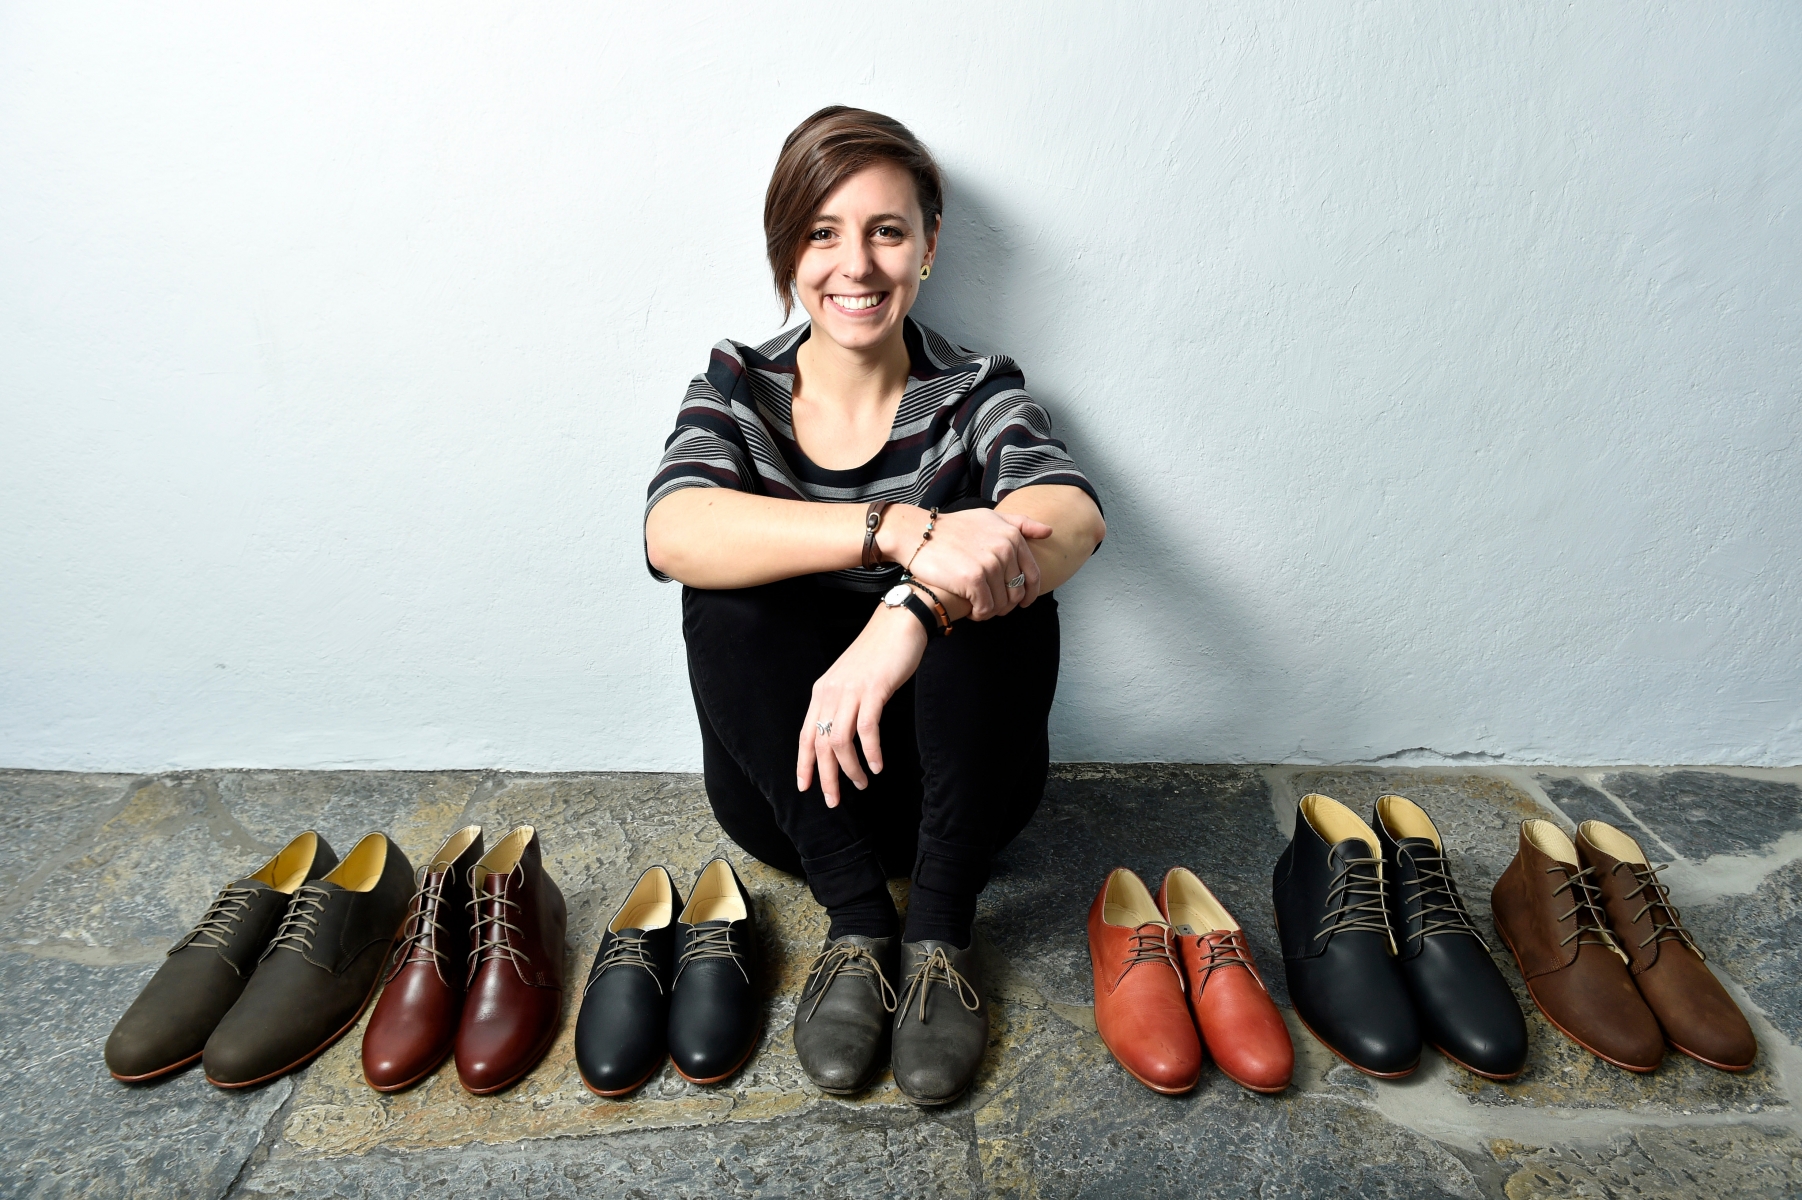 Sion - 13 janvier 2016 - Florence Maurer importe et vend des chaussures du Pérou issus d'une production artisanale et responsable. (Le Nouvelliste/ Héloïse MARET) . (Le Nouvelliste/ Héloïse MARET) FLORENCE MAURER 3